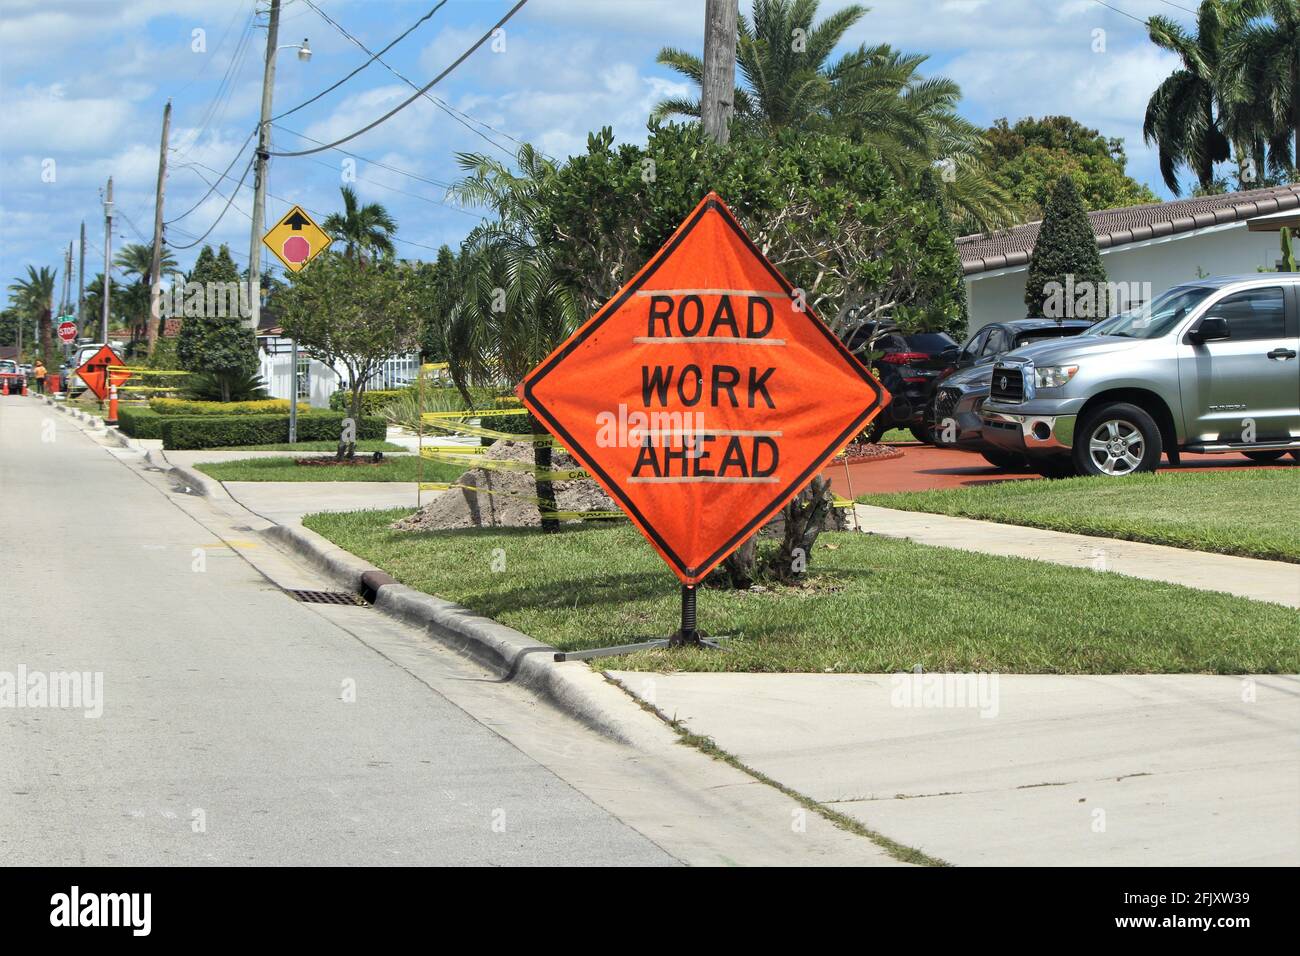 Road Work Ahead signe dans une rue dans leur ville de Hialeah. Le chantier s'approche dans un quartier résidentiel. Banque D'Images